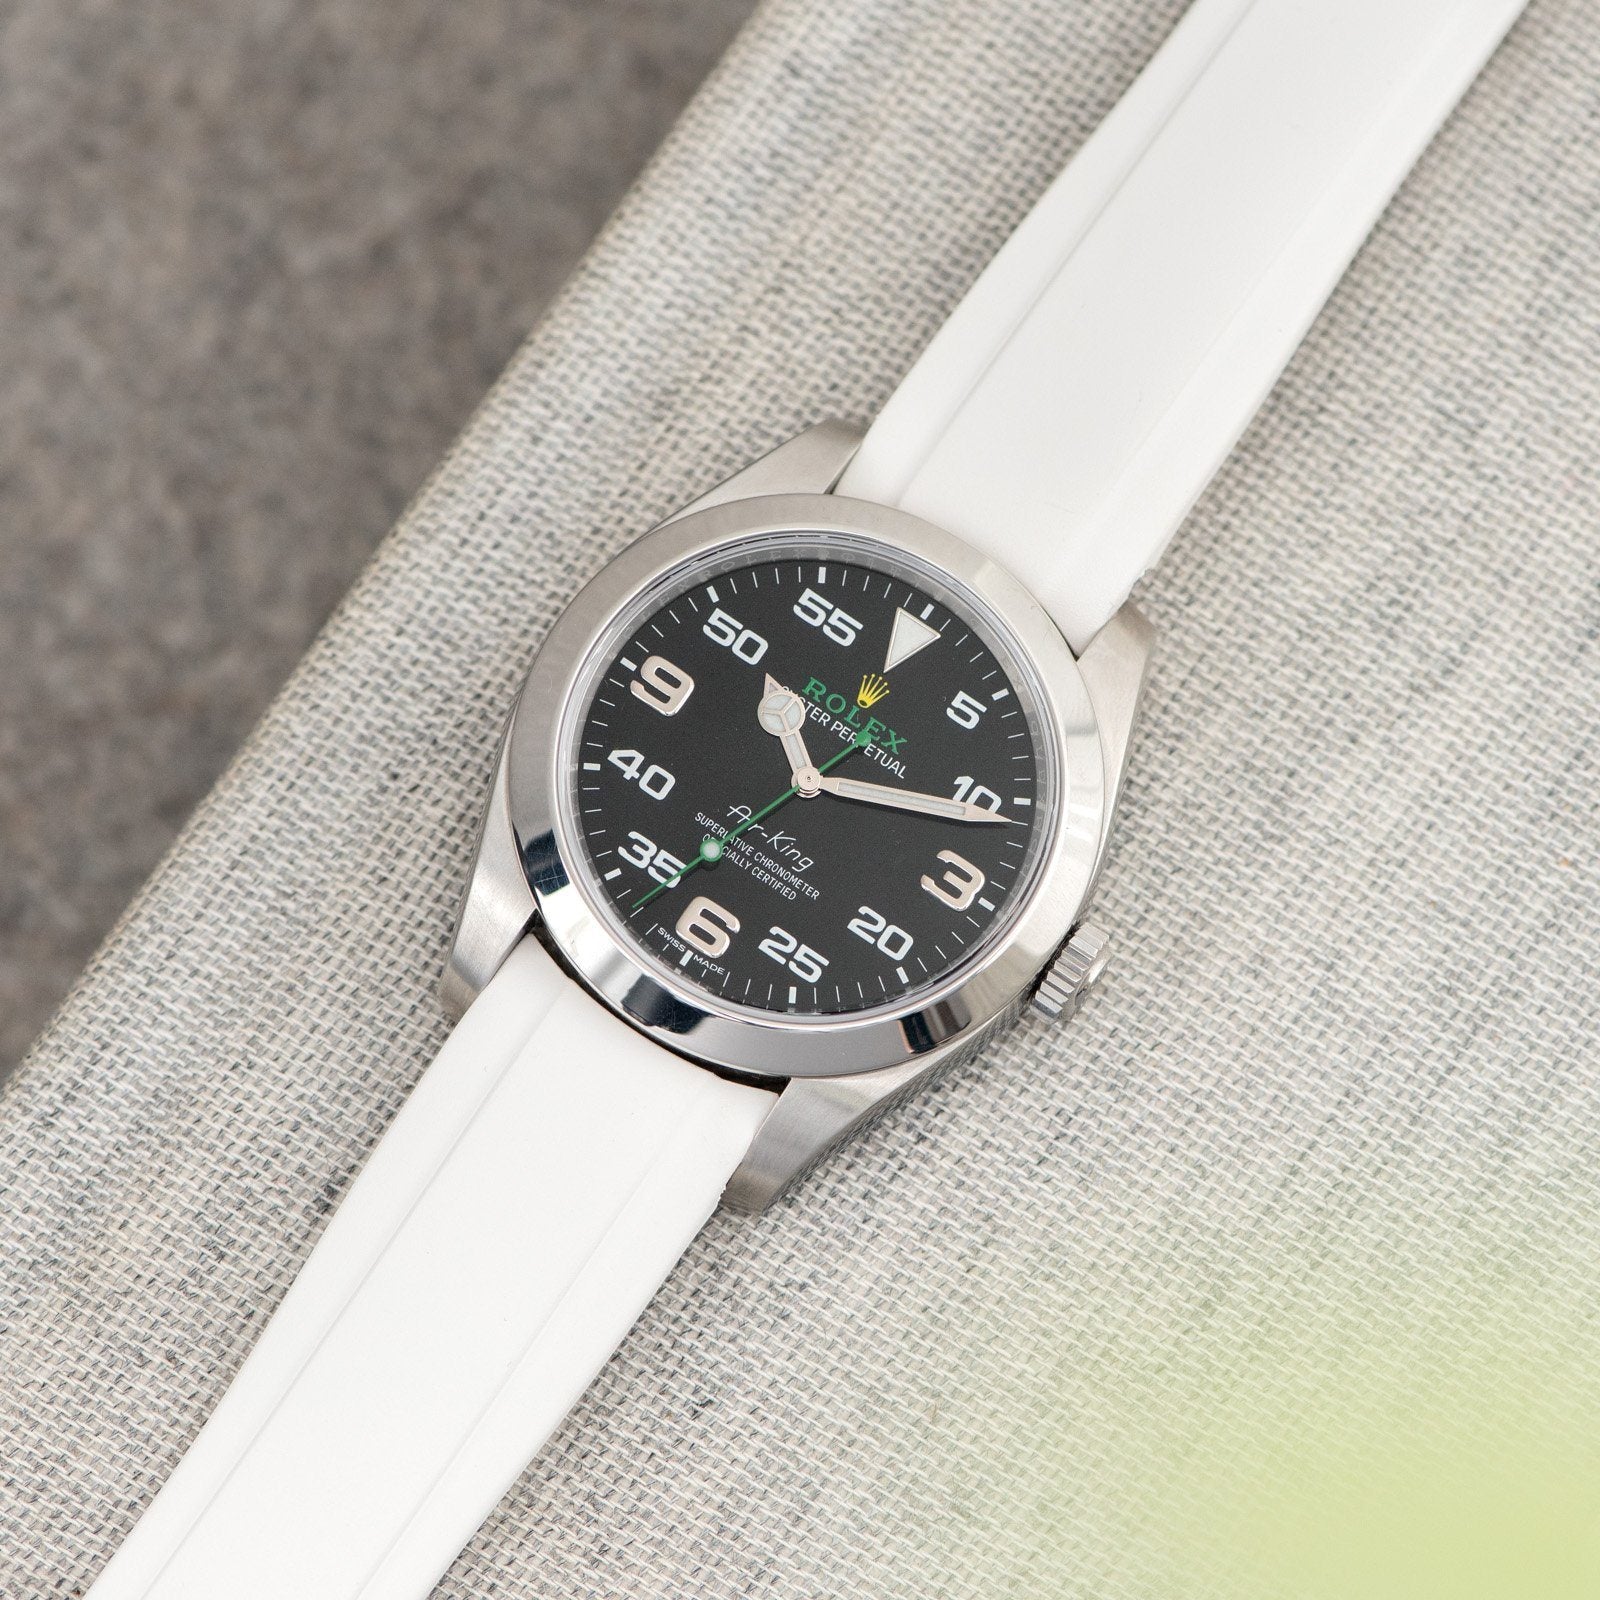 Everest Bands Kautschuk Uhrenarmband Weiß - Für Rolex